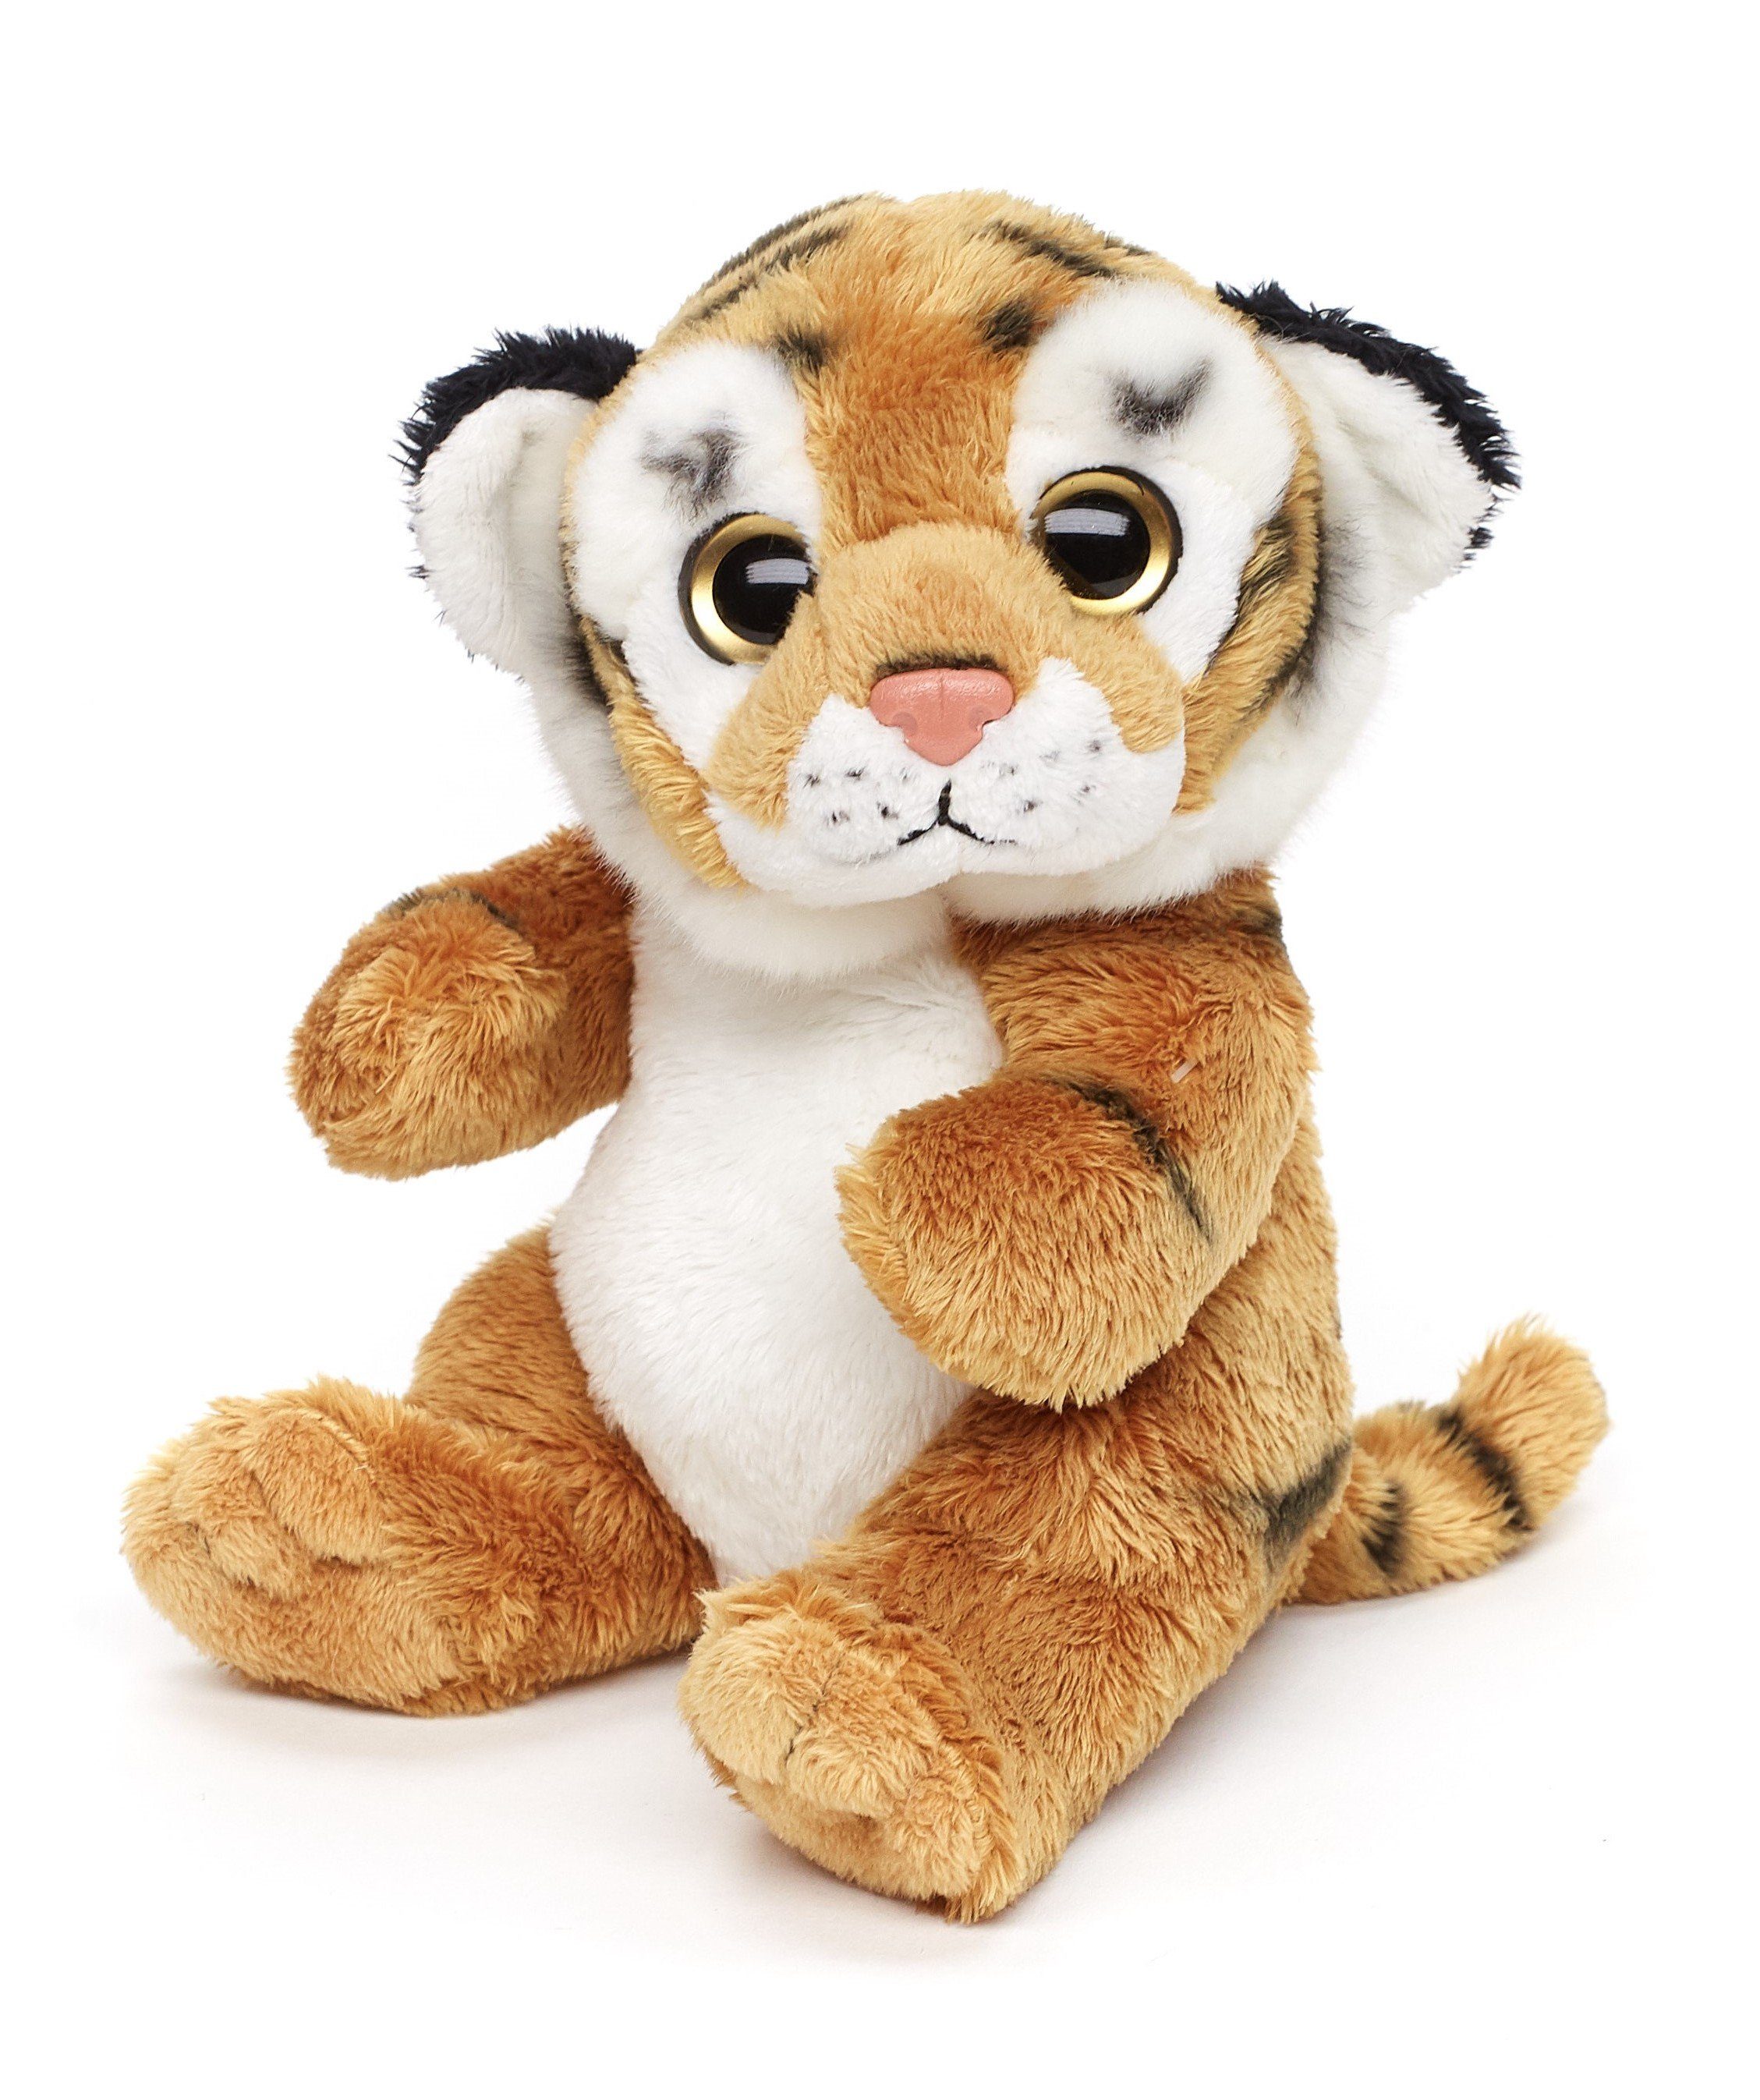 Uni-Toys Kuscheltier Plushie - Tiger/weißer Tiger/Löwe/ Löwin - 16 cm -  Plüsch, Plüschtier, zu 100 % recyceltes Füllmaterial